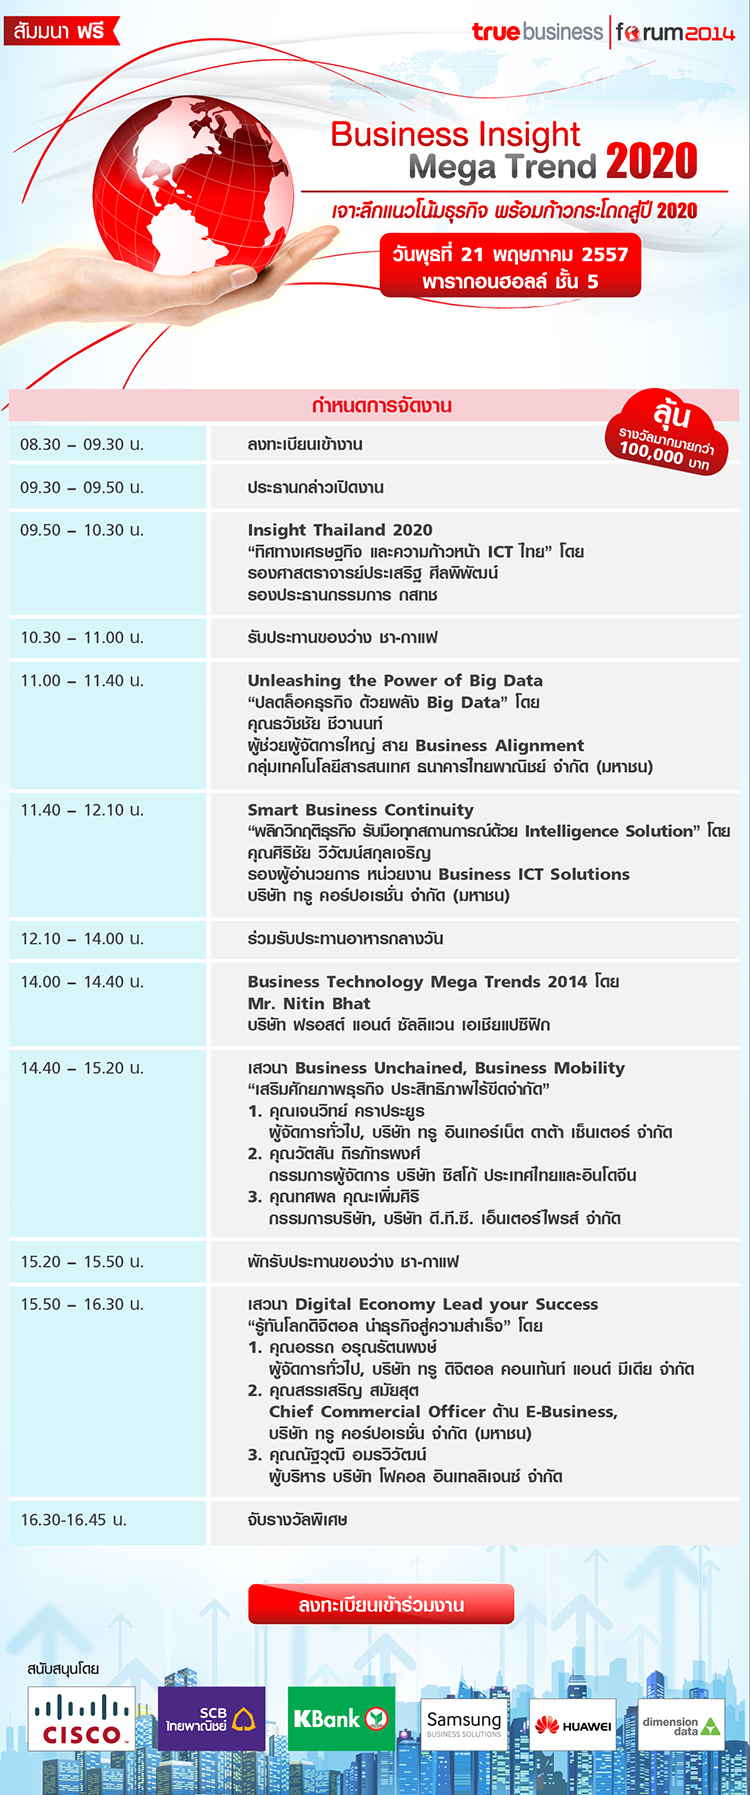 Agenda-forum 2014